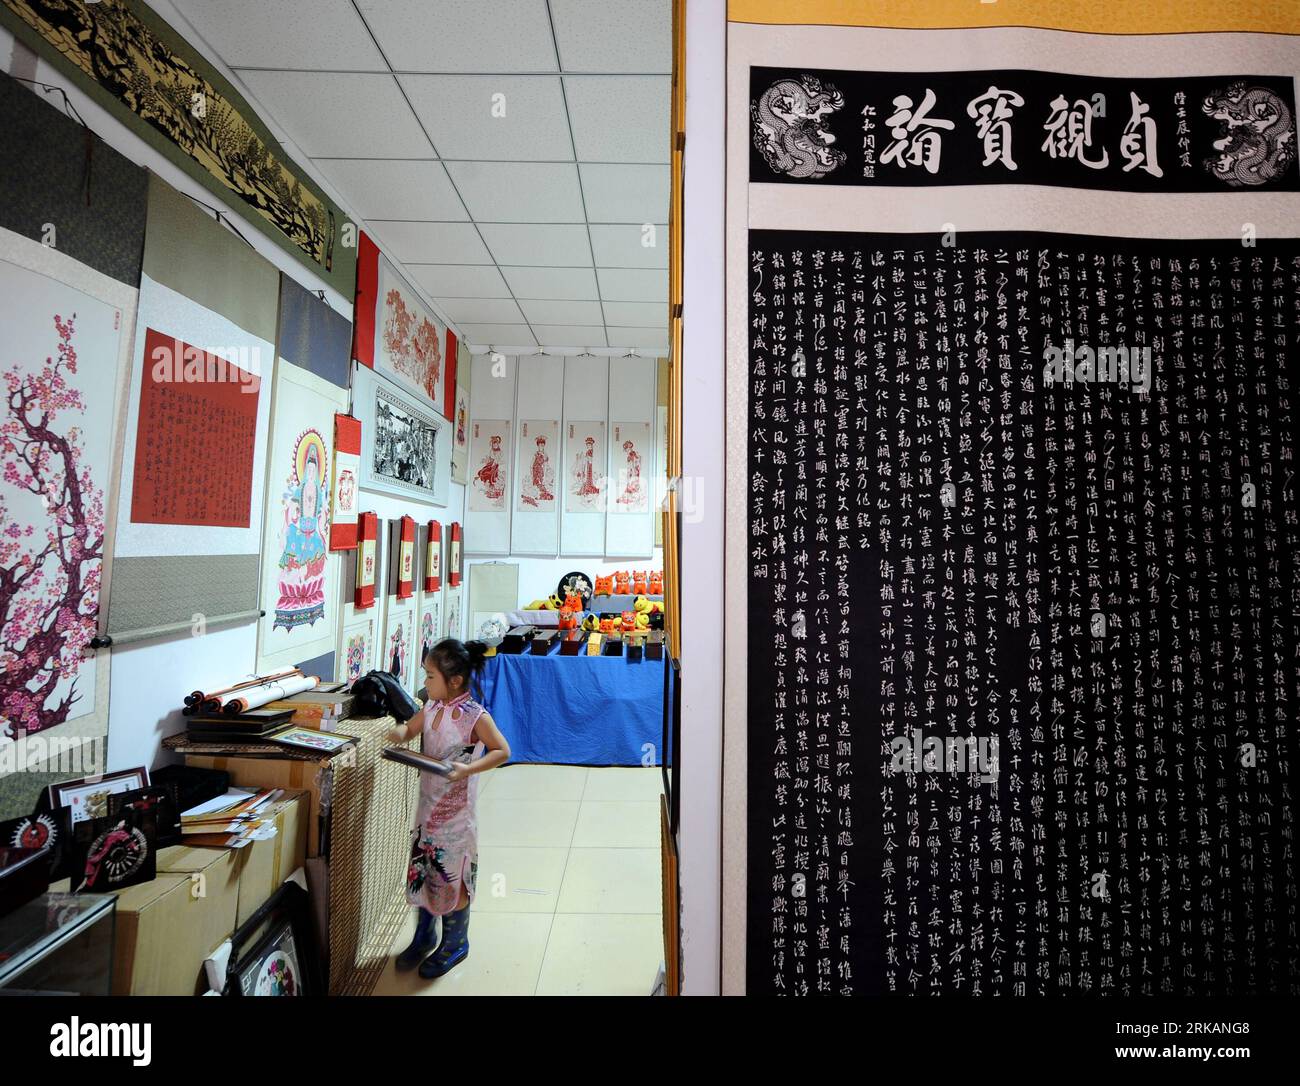 Bildnummer : 54408087 Datum : 02.09.2010 Copyright : imago/Xinhua (100907) -- TAIYUAN, 7 septembre 2010 (Xinhua) -- Guo Yijing aime couper du papier dans l'atelier de ses parents à Taiyuan, dans la province du Shanxi, dans le nord de la Chine, le 2 septembre 2010. Il y a une célèbre famille de papier découpé à Taiyuan. Un couple nommé Guo Shulin et Wang Yinfeng, ainsi que leur fille Guo Yijing, consacrent leur vie à la découpe de papier traditionnelle chinoise. (Xinhua/Yan Yan) (wxy) CHINA-SHANXI-PAPER-CUT FAMILY (CN) PUBLICATIONxNOTxINxCHN Gesellschaft China Kunsthandwerk Fotostory kbdig xcb 2010 quer o0 Scherenschnitt, Papierschnitt, Tradition Banque D'Images